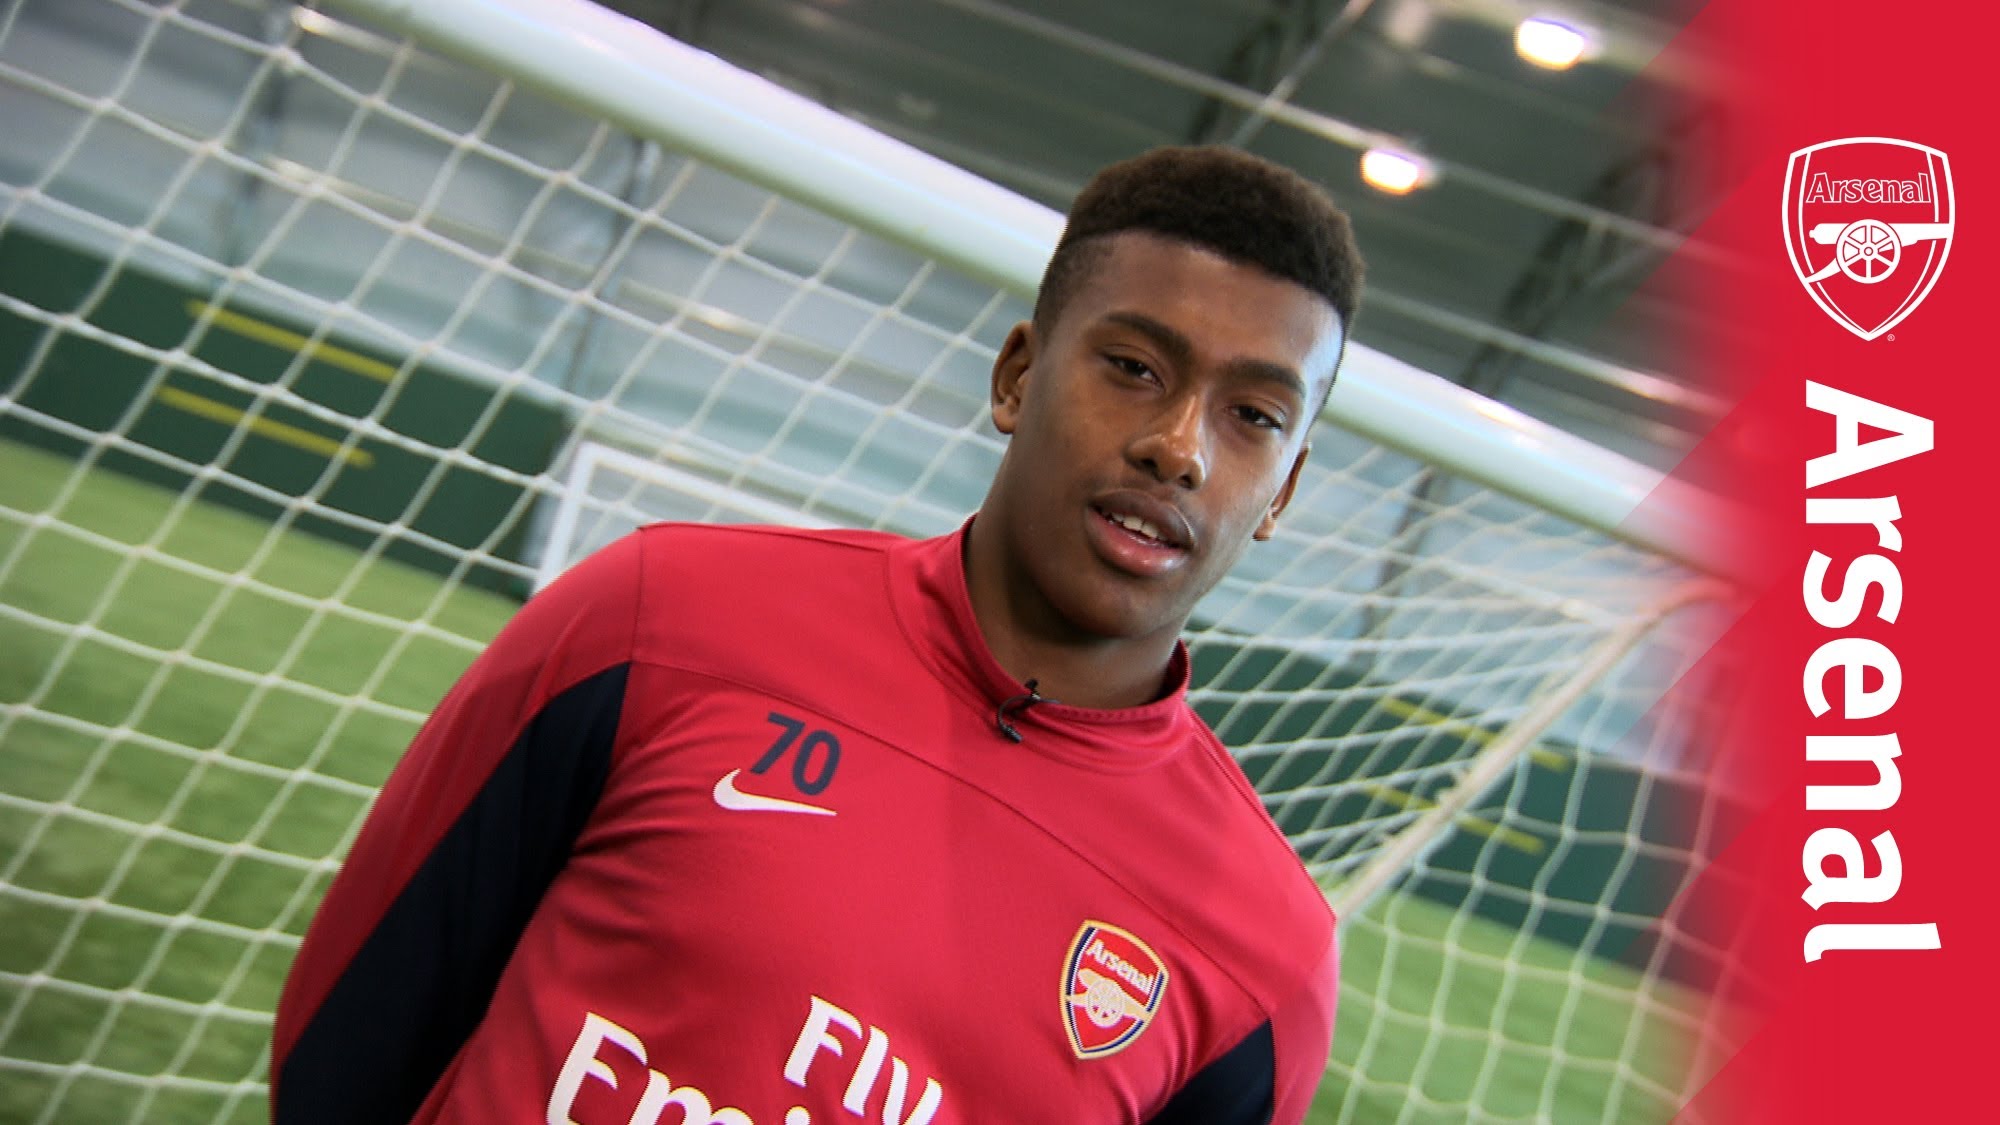 Sunday Olise calls Arsenal youngster Iwobi